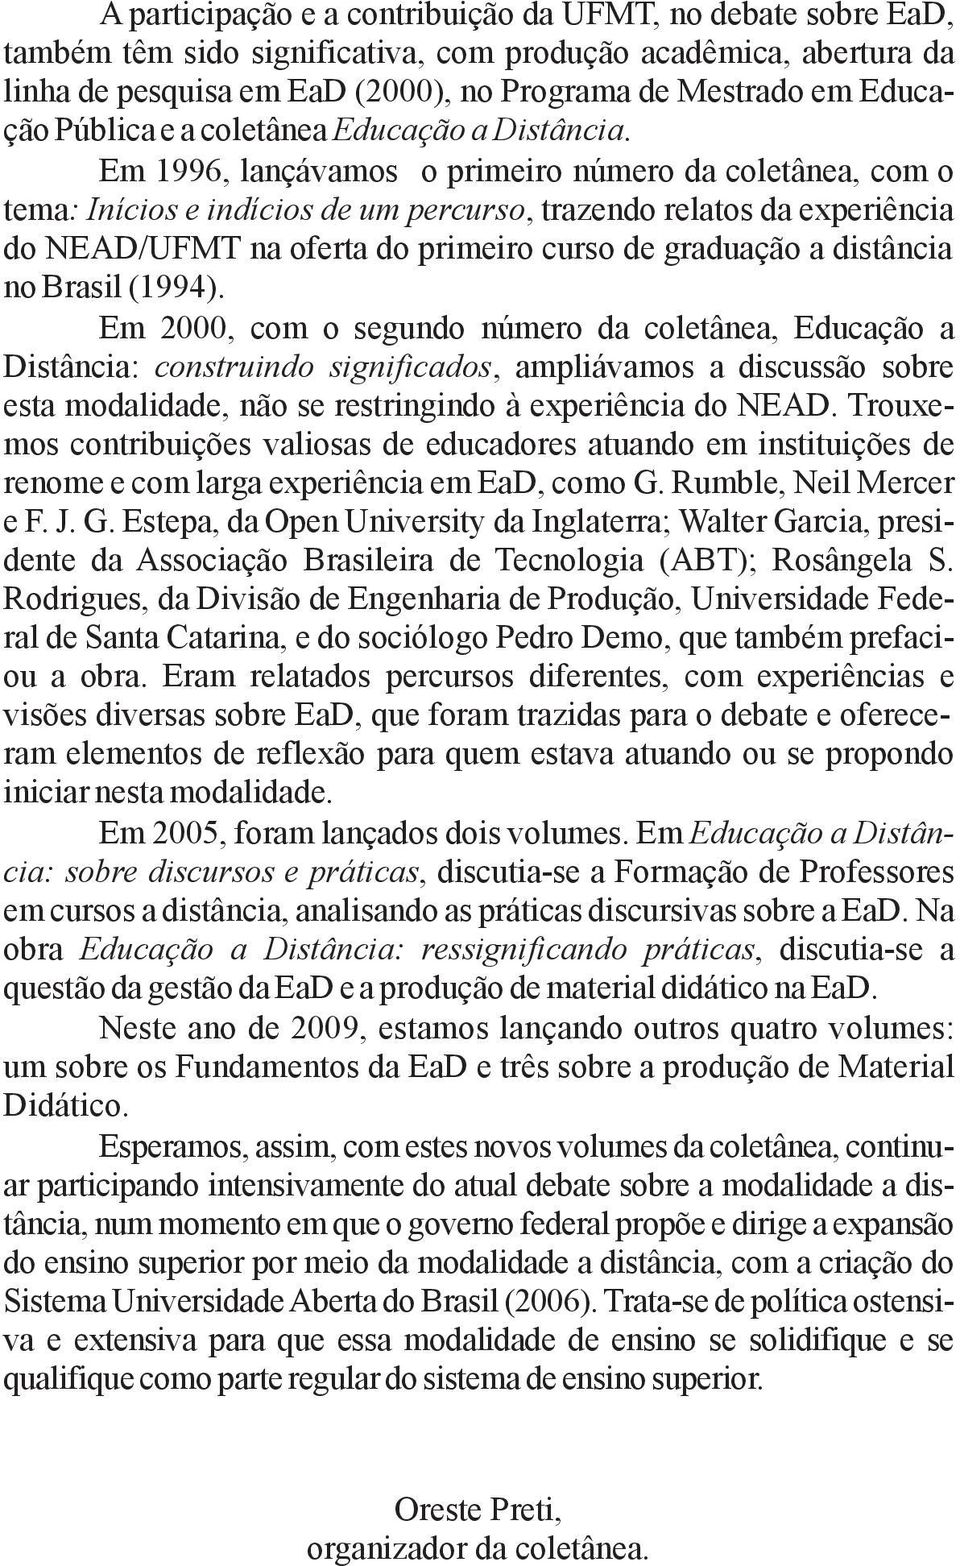 Em 1996, lançávamos o primeiro número da coletânea, com o tema: Inícios e indícios de um percurso, trazendo relatos da experiência do NEAD/UFMT na oferta do primeiro curso de graduação a distância no